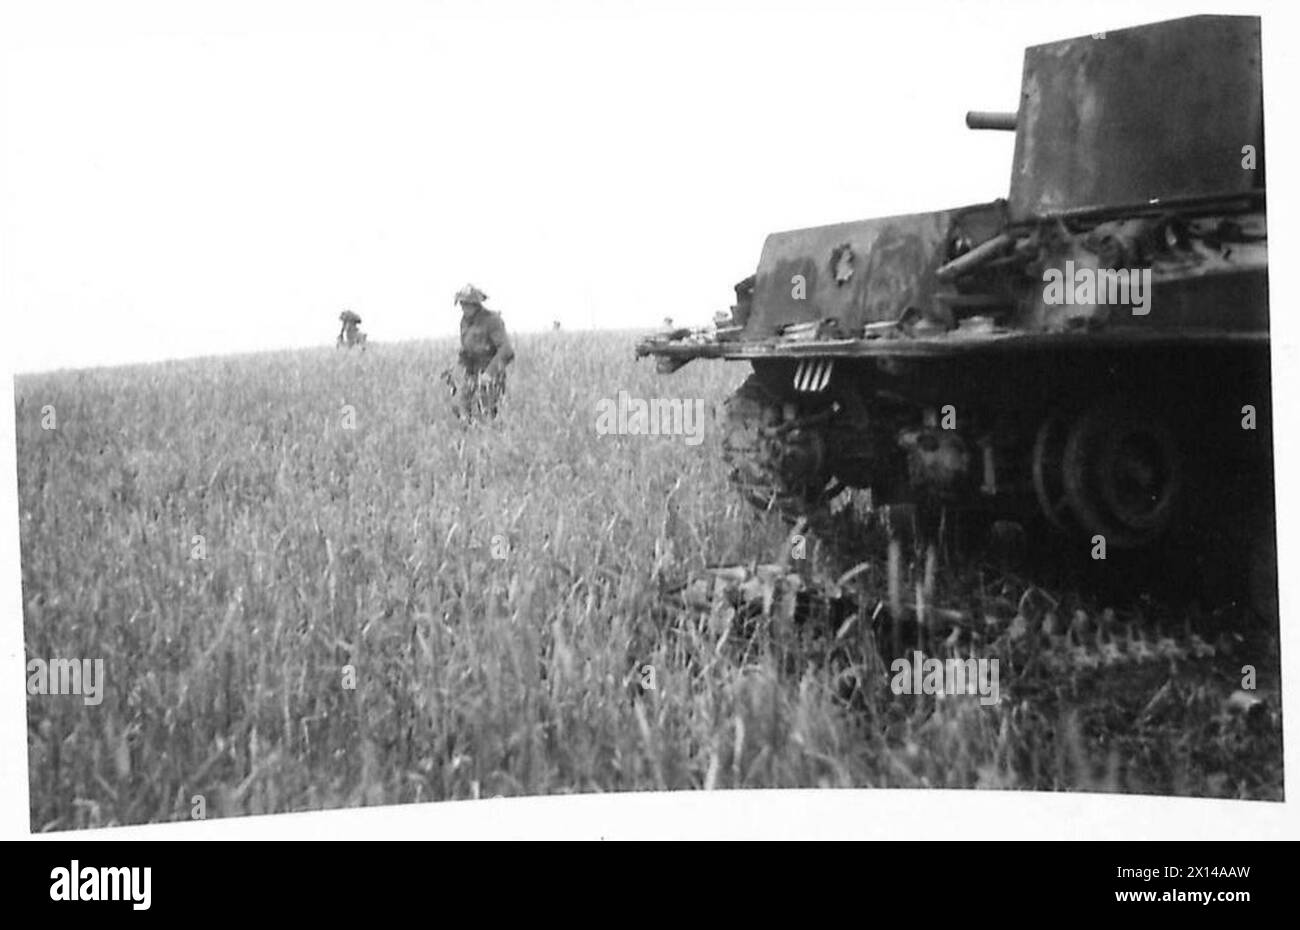 INFANTERIE-VORMARSCH DURCH DIE WHEATFIELDS - vorbei an einem kaputten Panzer unsere Infanterie-Vormarsch über eine wheatfield British Army, 21st Army Group Stockfoto